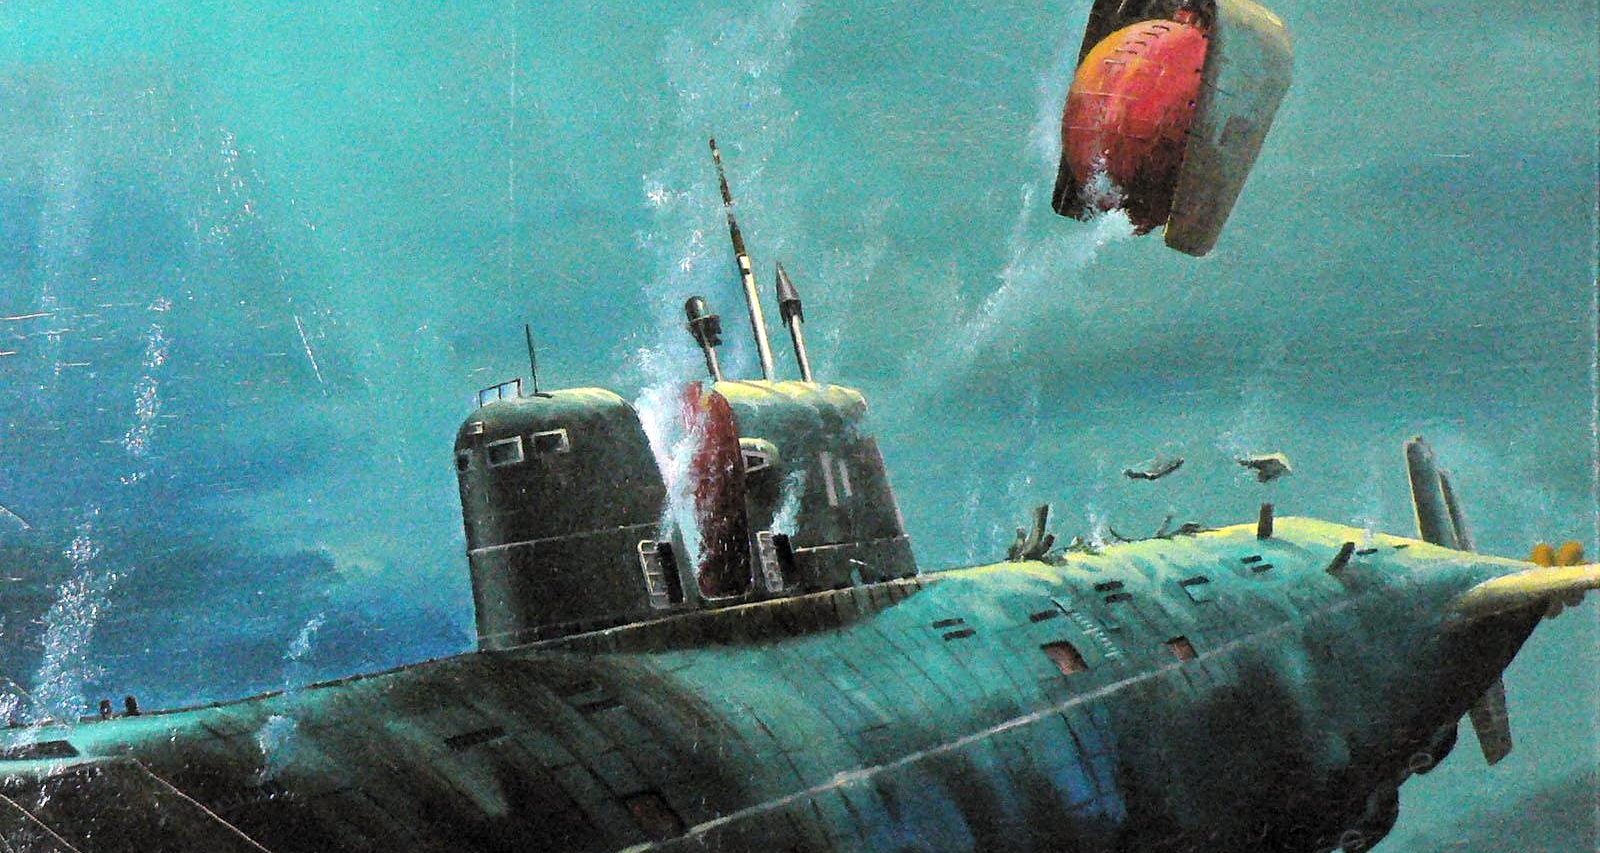 Авария на АПЛ Комсомолец: как экипажу удалось спастись с подводной лодки